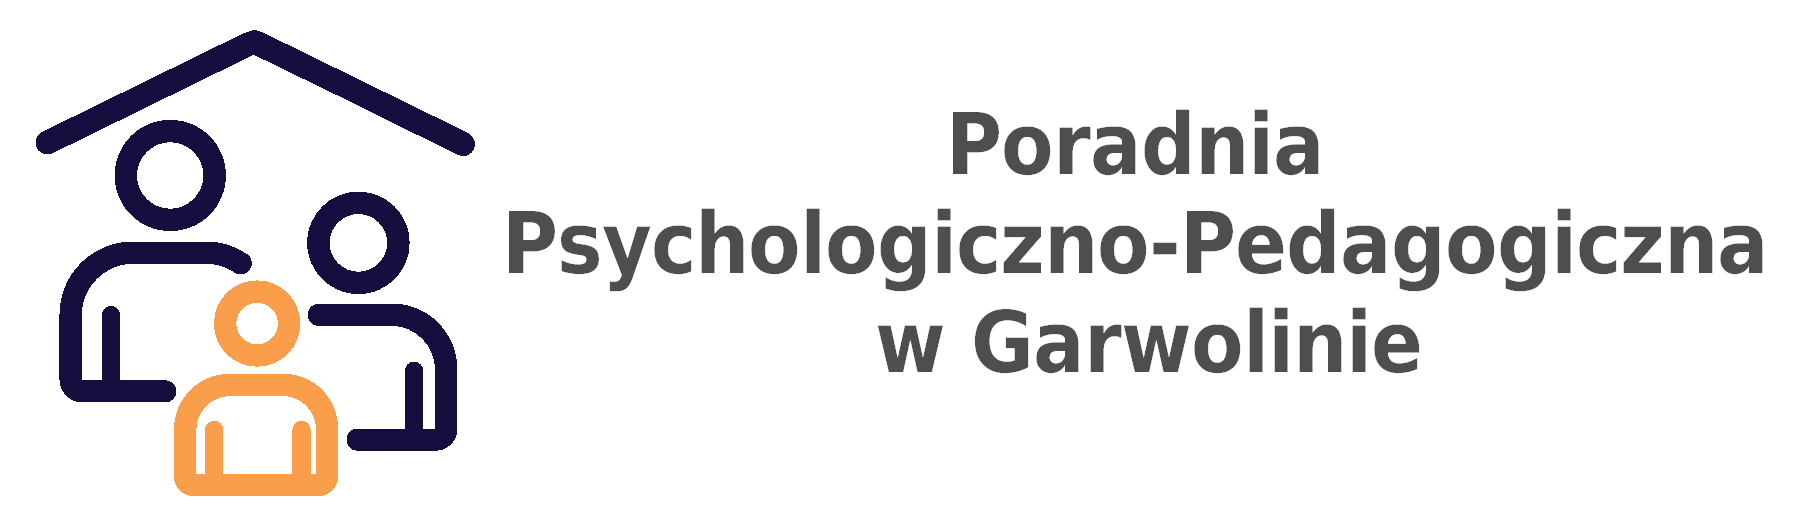 Poradnia Psychologiczno-Pedagogiczna w Garwolinie